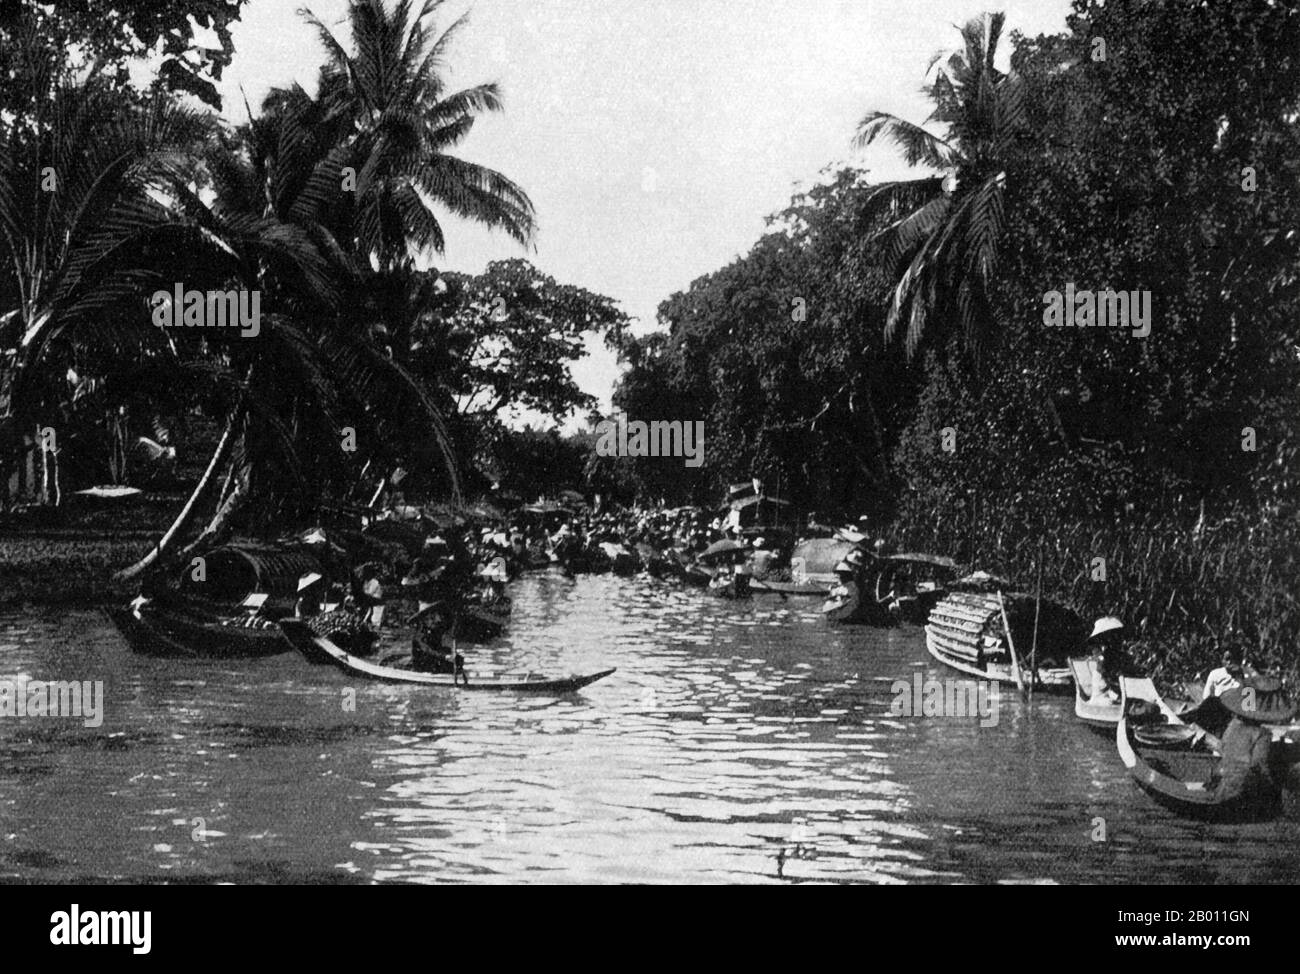 Thaïlande: Journée de marché sur un canal à Bangkok, c. 1900. Au tournant du XXe siècle, la grande majorité des Siamois étaient des riziculteurs qui vivaient et travaillaient le long des cours d'eau. Chaque ménage avait un bateau, dont environ 600,000 navigué sur les canaux et les rivières de Bangkok. L'aviron a été fait de l'arrière du bateau. La plupart des maisons étaient en bois et en bambou, et ont été construites sur pilotis avec une échelle allant à l'eau. Banque D'Images